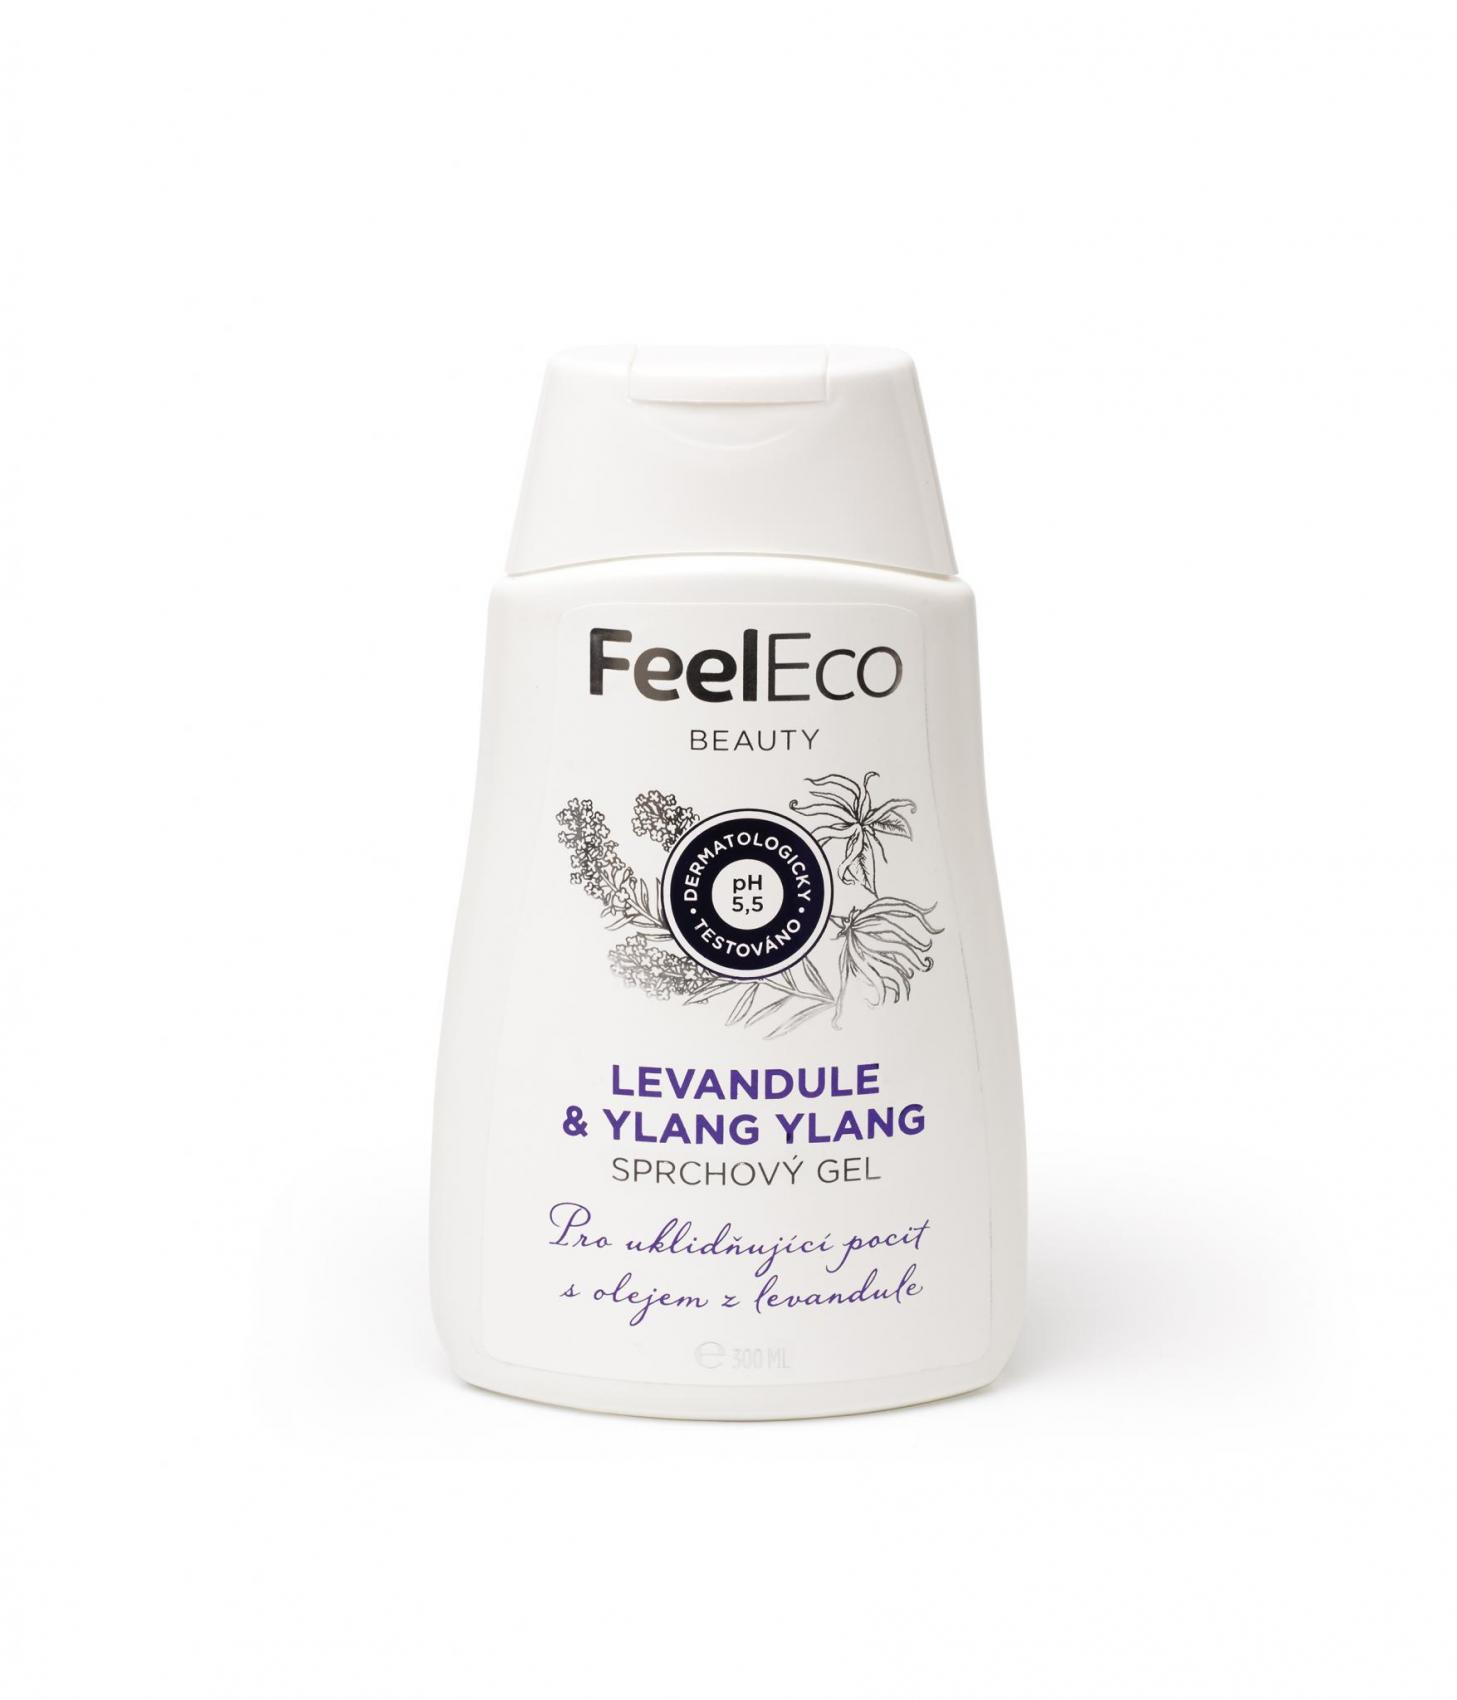 Feel Eco sprchový gel levandule & ylang ylang, 300ml